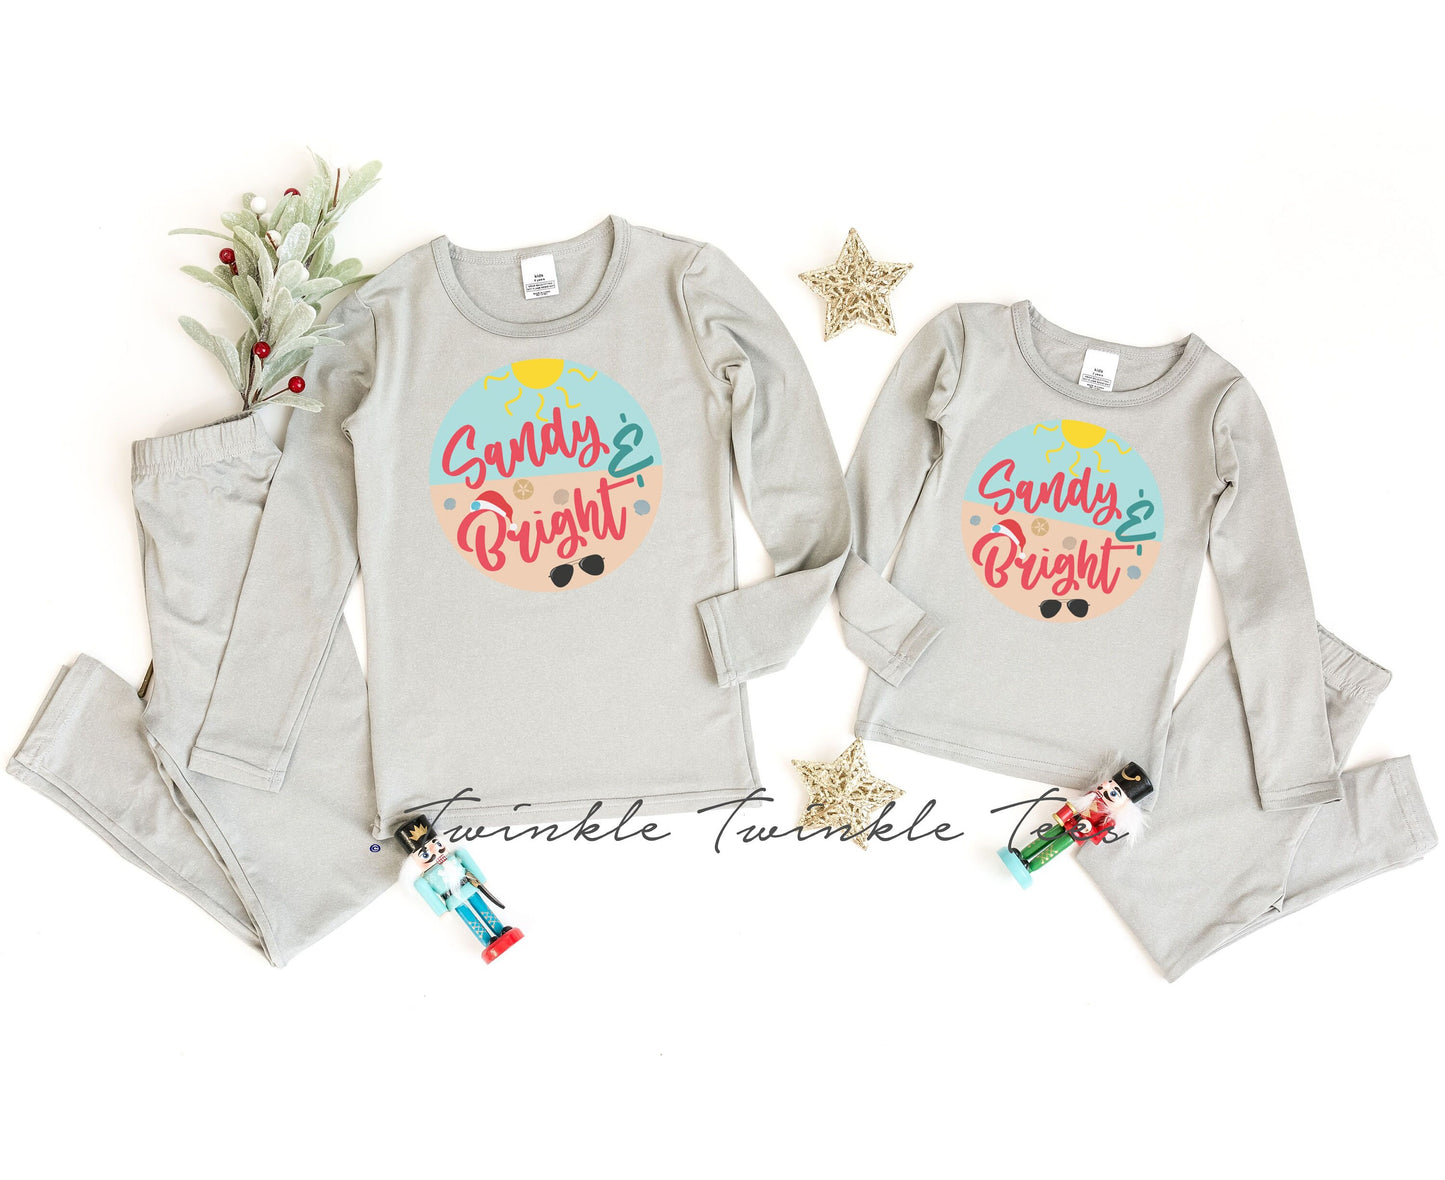 Sandy and Bright Grey Thermal Pajamas, christmas pajamas for the family, thermal pajamas, matching christmas pajamas